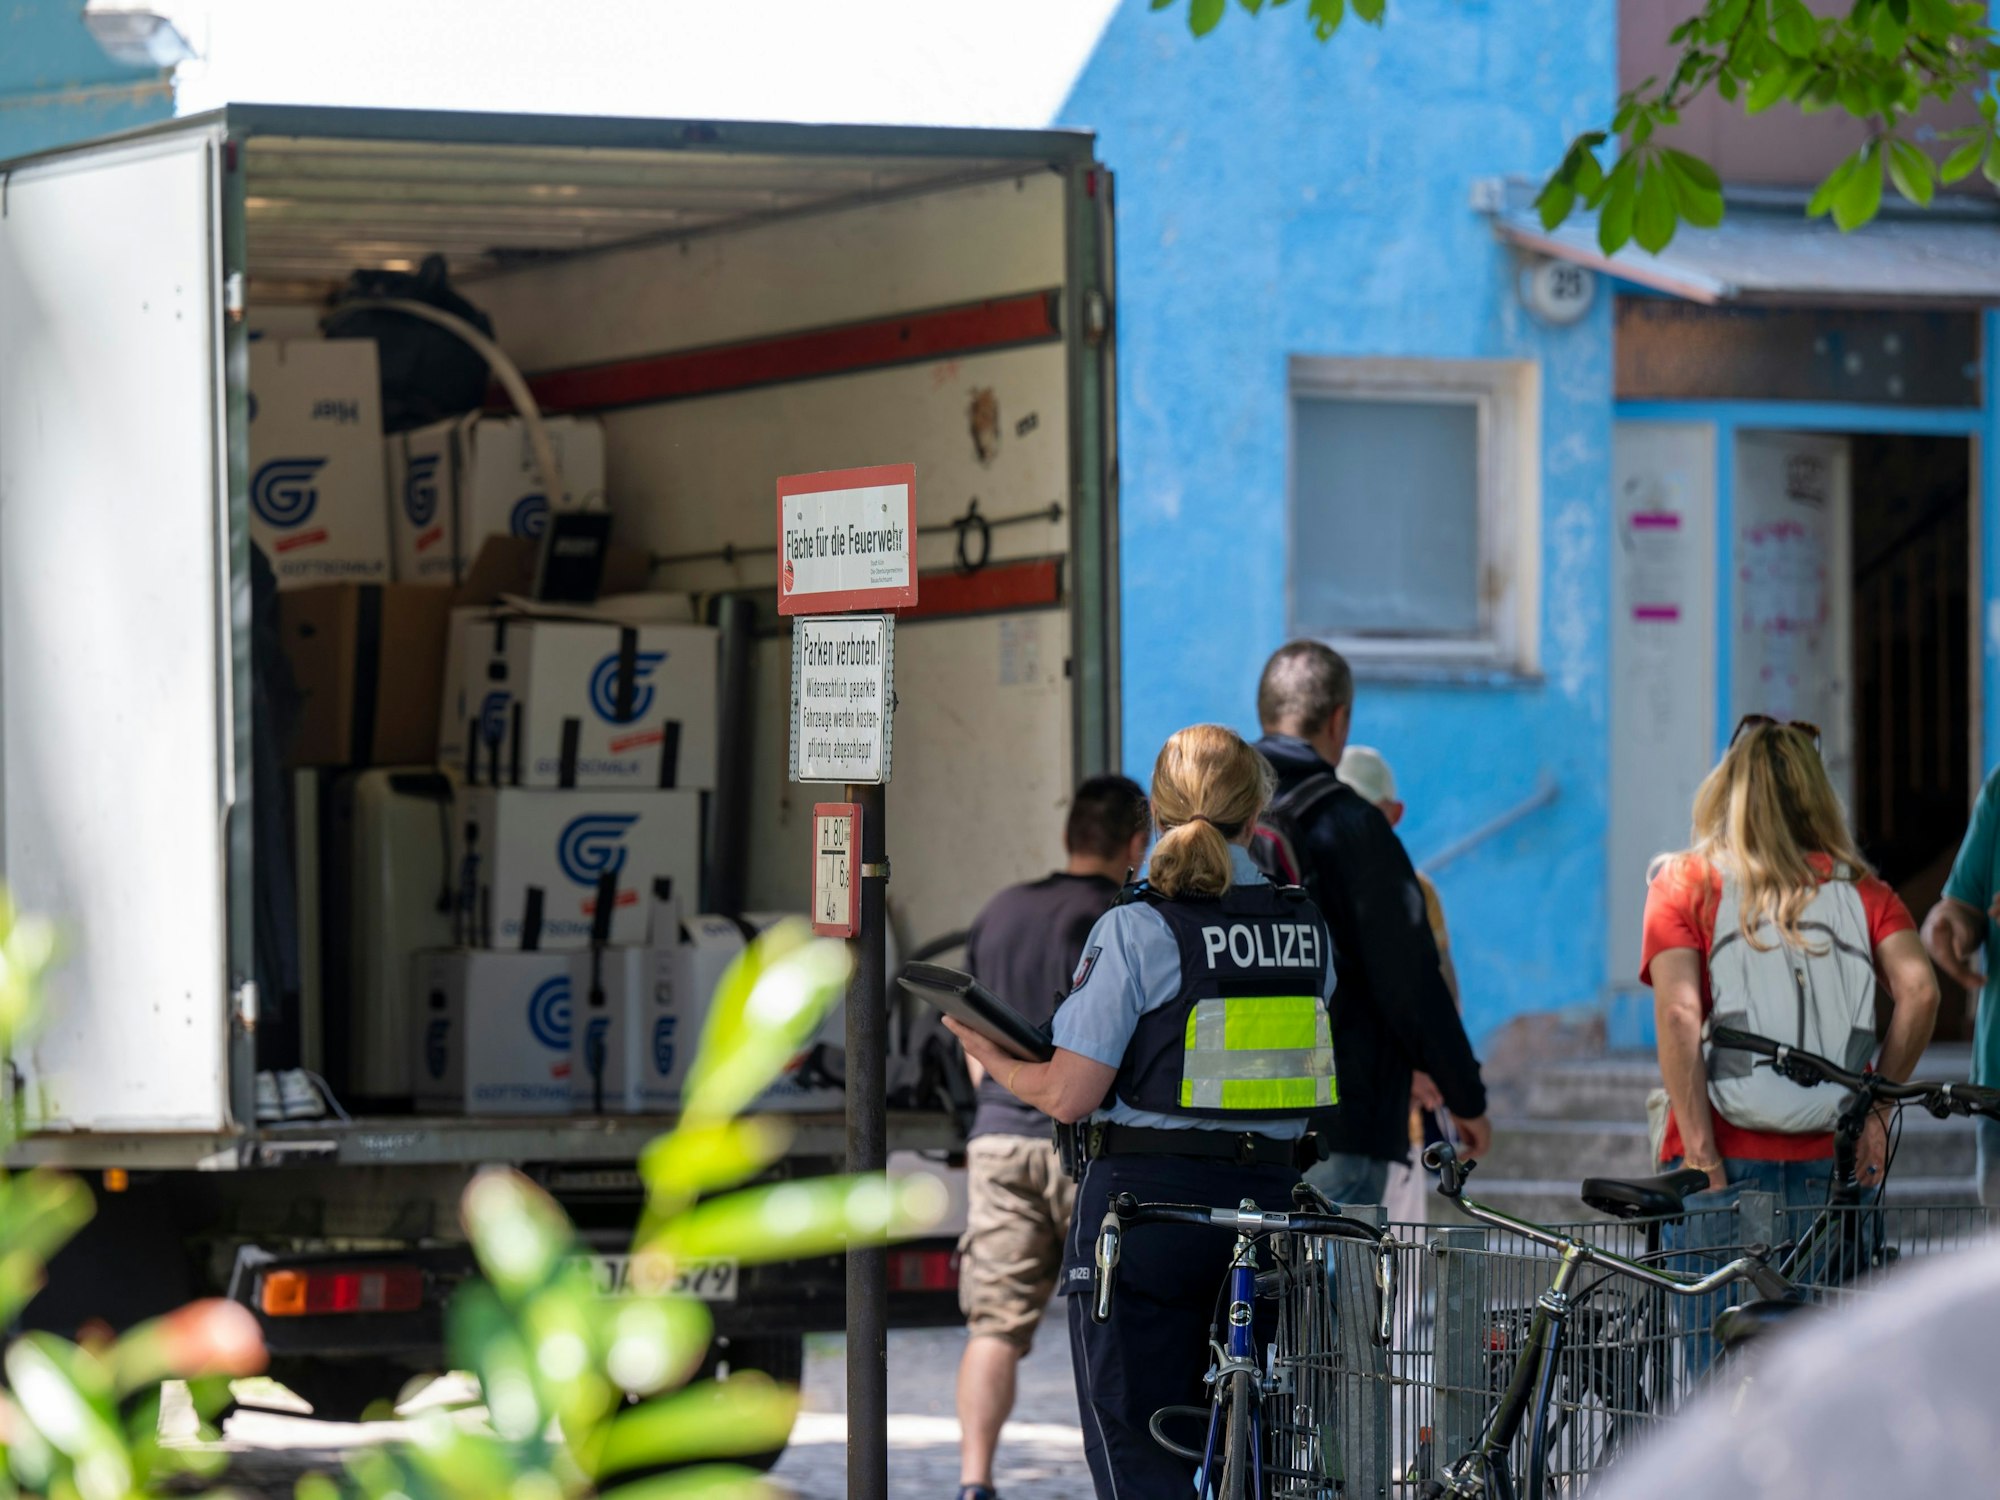 Ein Umzugswagen steht vor dem Haus, mehrere Personen, darunter eine Polizistin stehen davor.